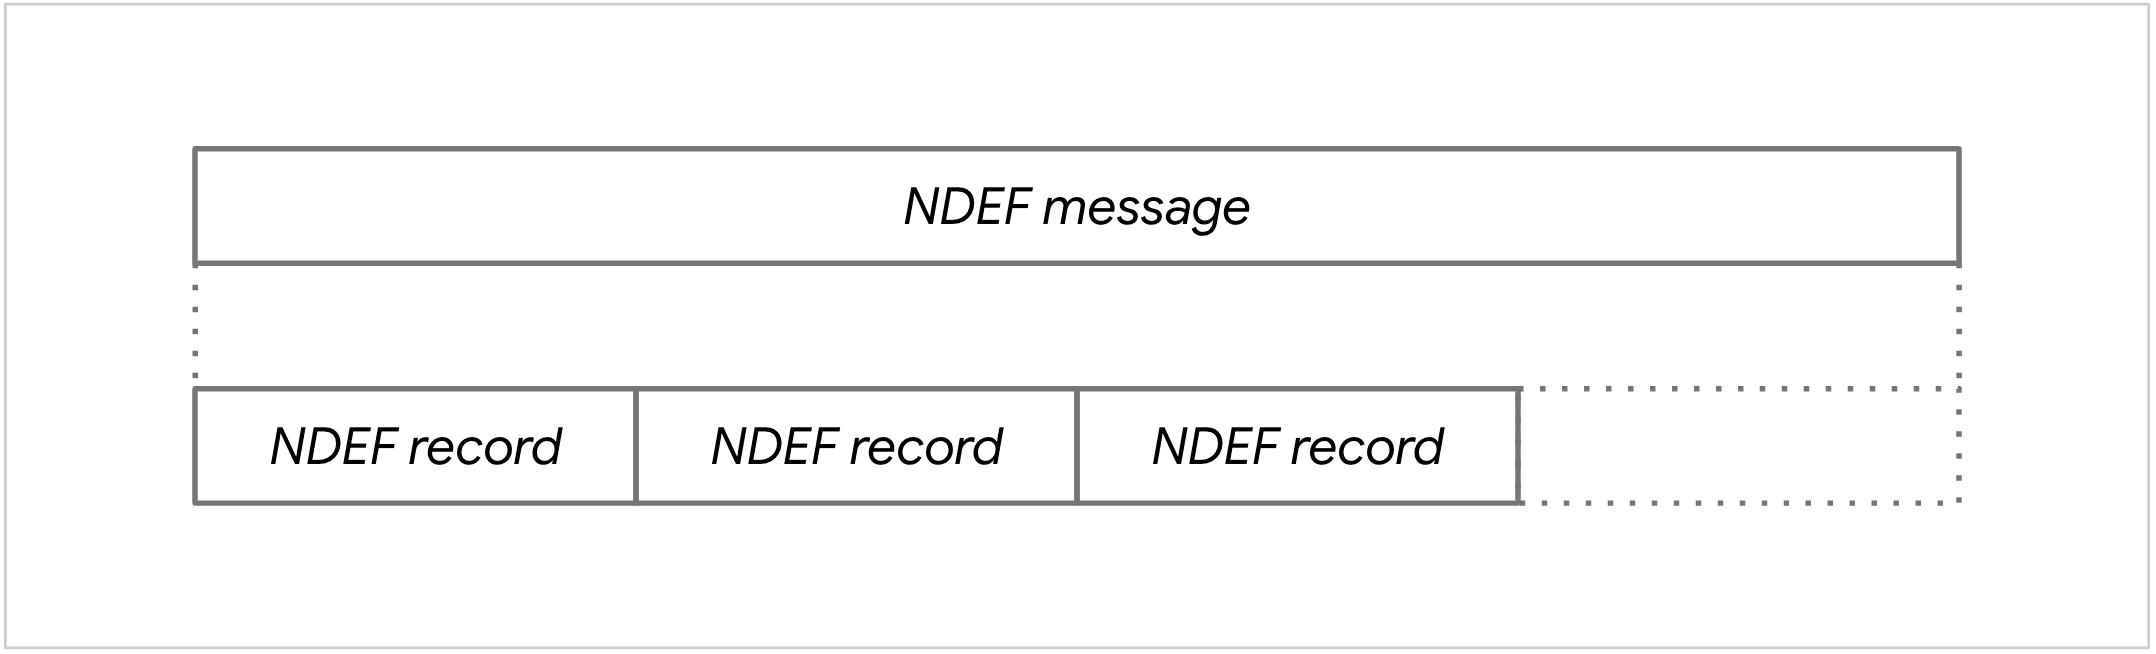 Diagramm einer NDEF-Nachricht